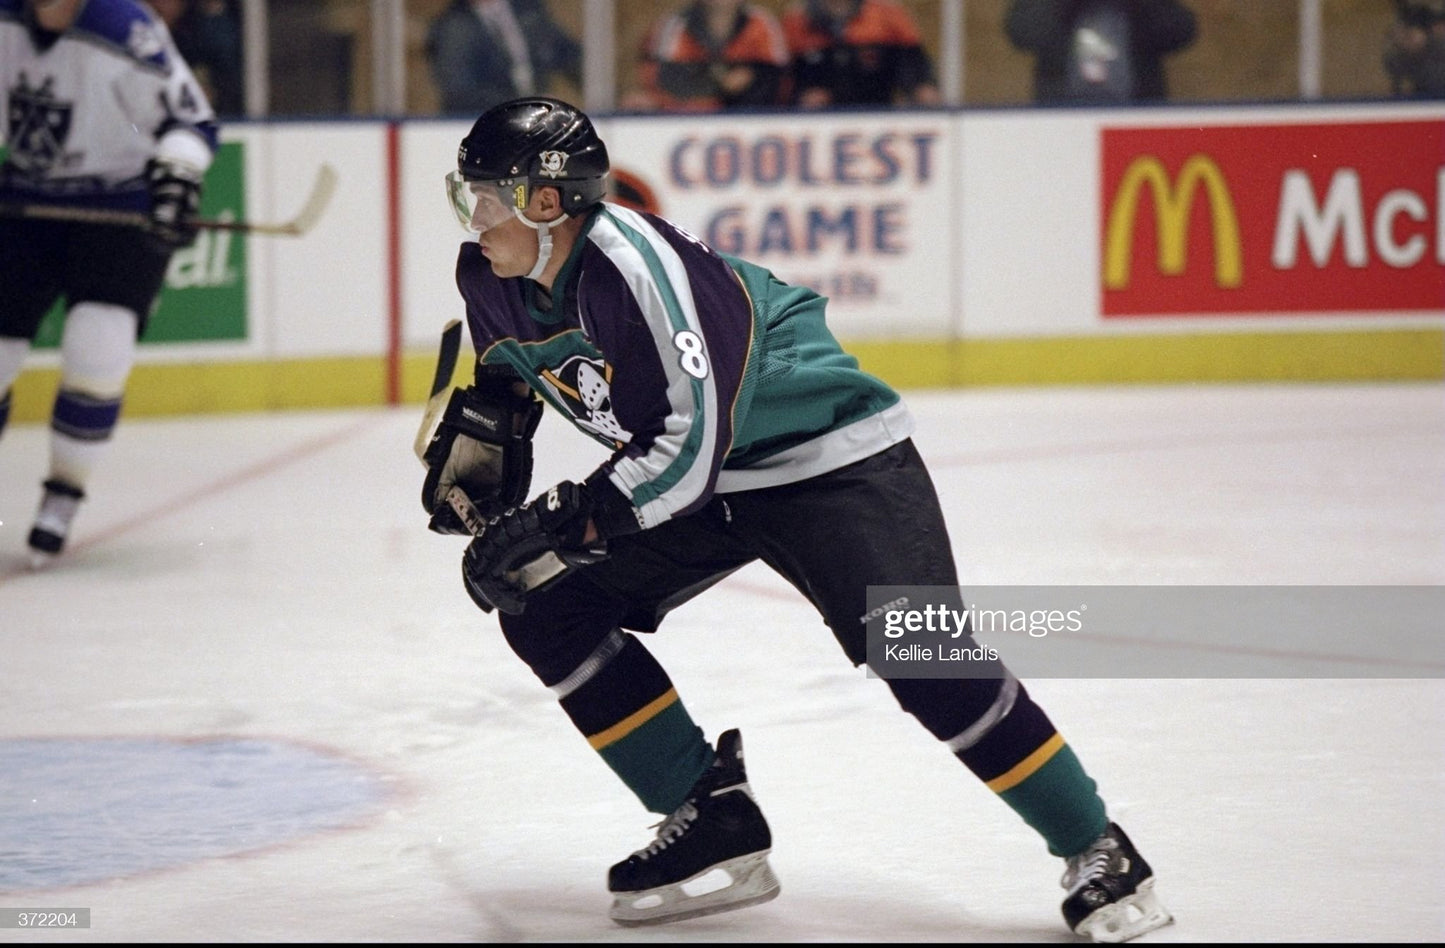 Third String Goalie: 1997-98 Mighty Ducks of Anaheim Teemu Selanne